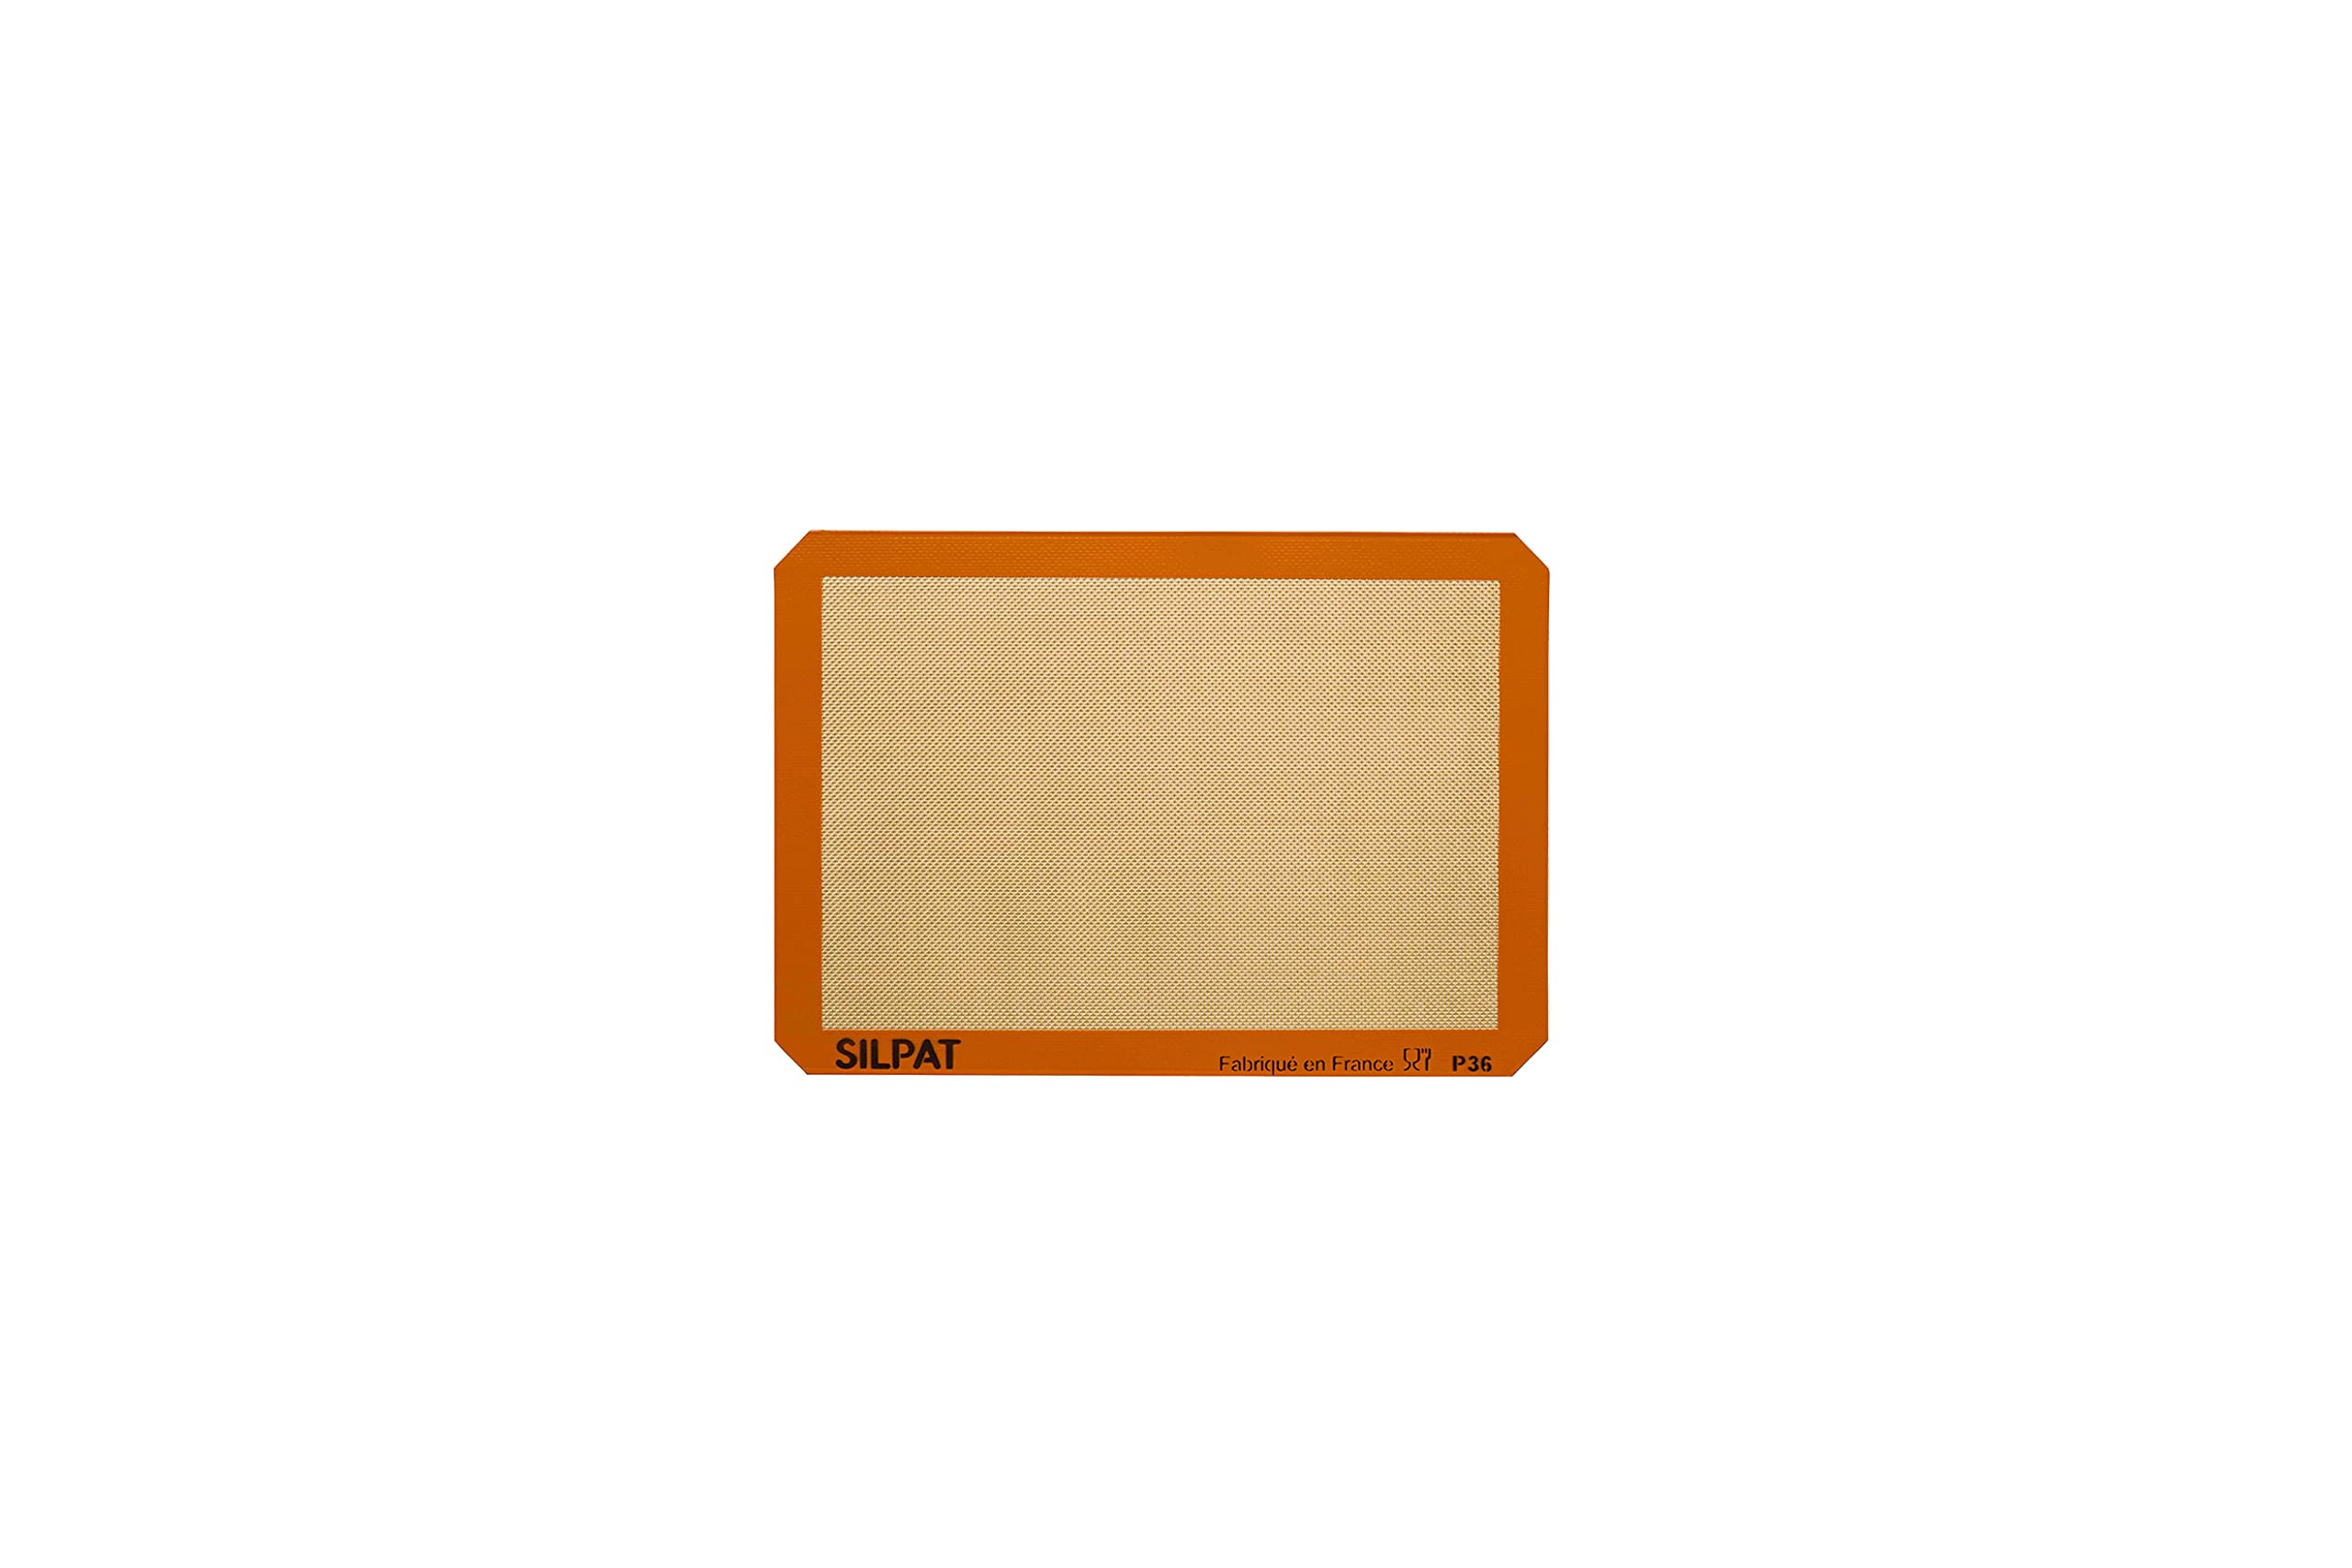 Silpat Premium Non-Stick Silicone Baking Mat, Petite Jelly Roll Size, 8-1/4 x 11-3/4, AE295205-01,Orange